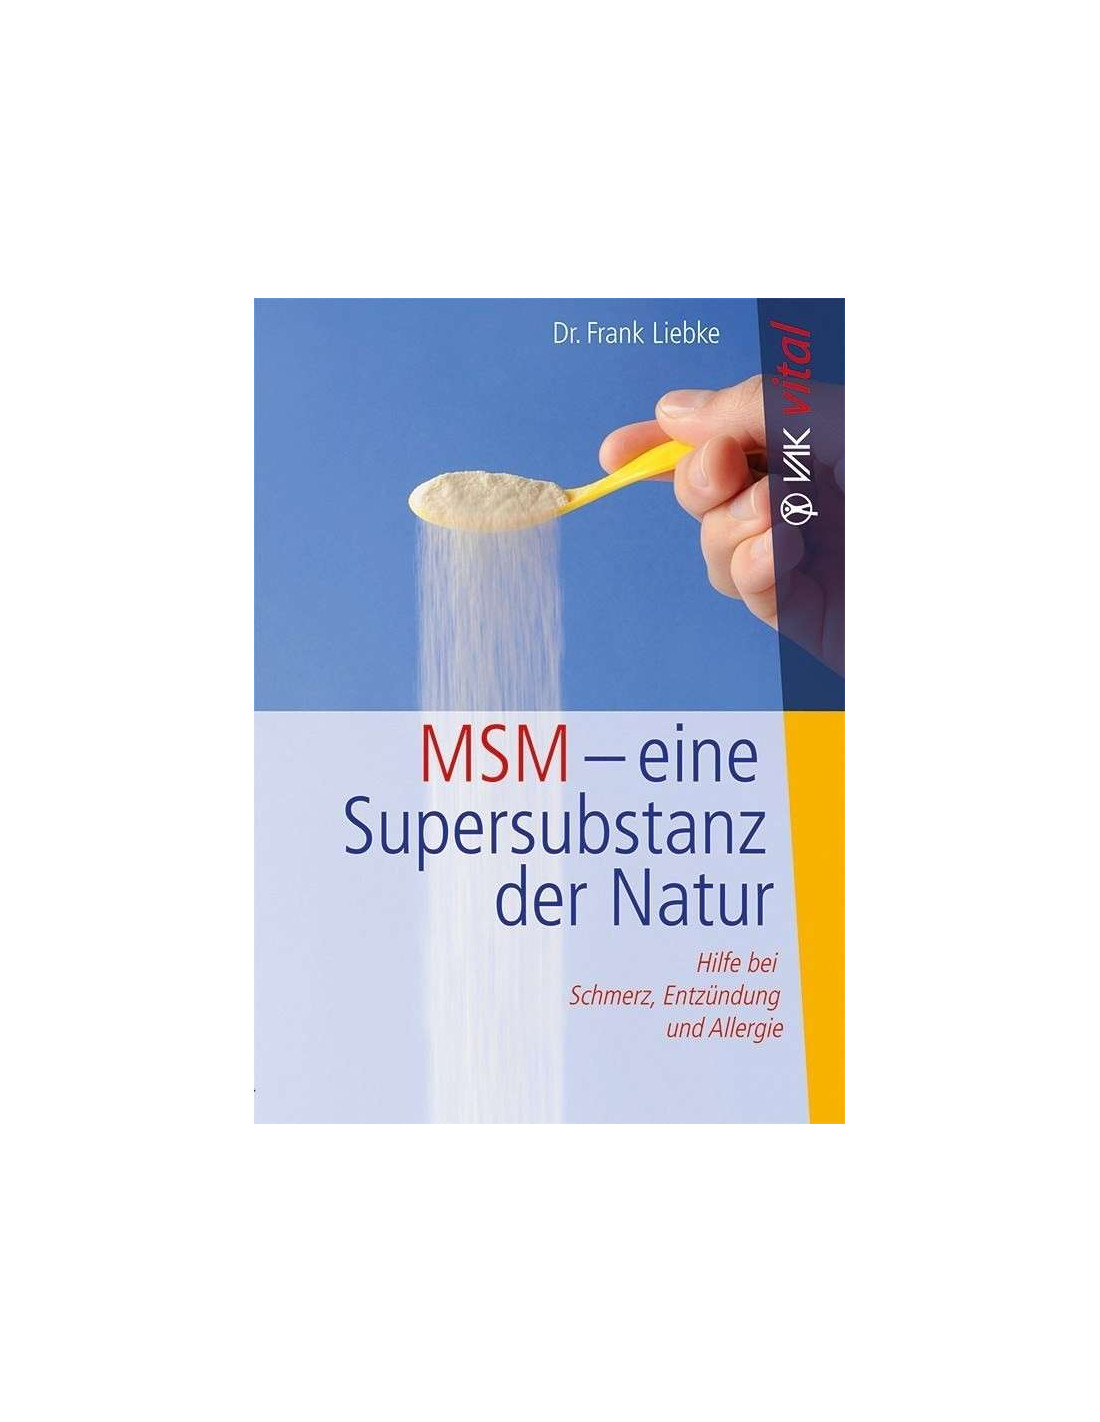 Buch: MSM – eine Super-Substanz der Natur (Frank Liebke)